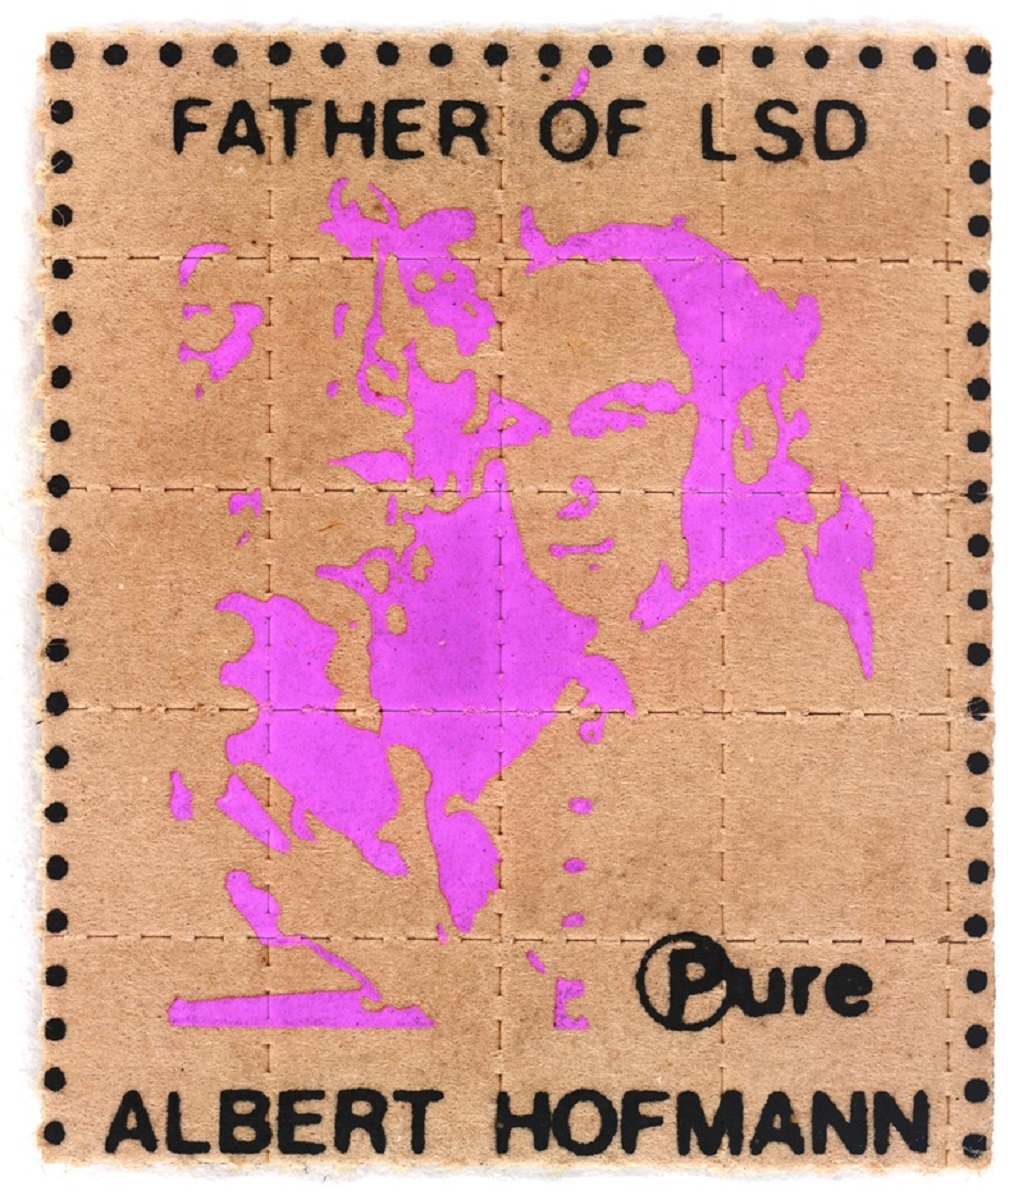 Artes nas cartelas de LSD 6